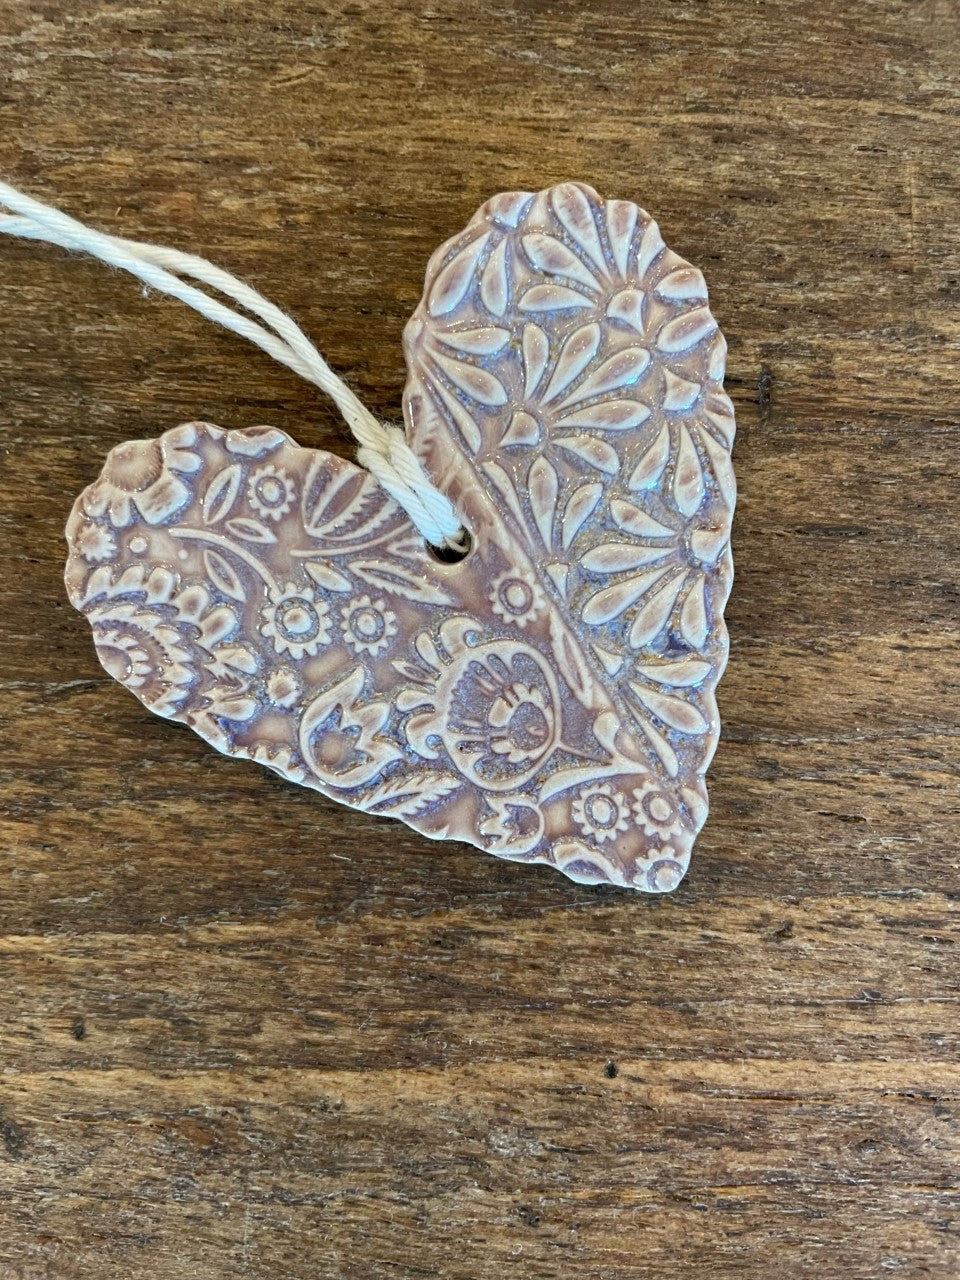 Handmade Ceramic Hearts